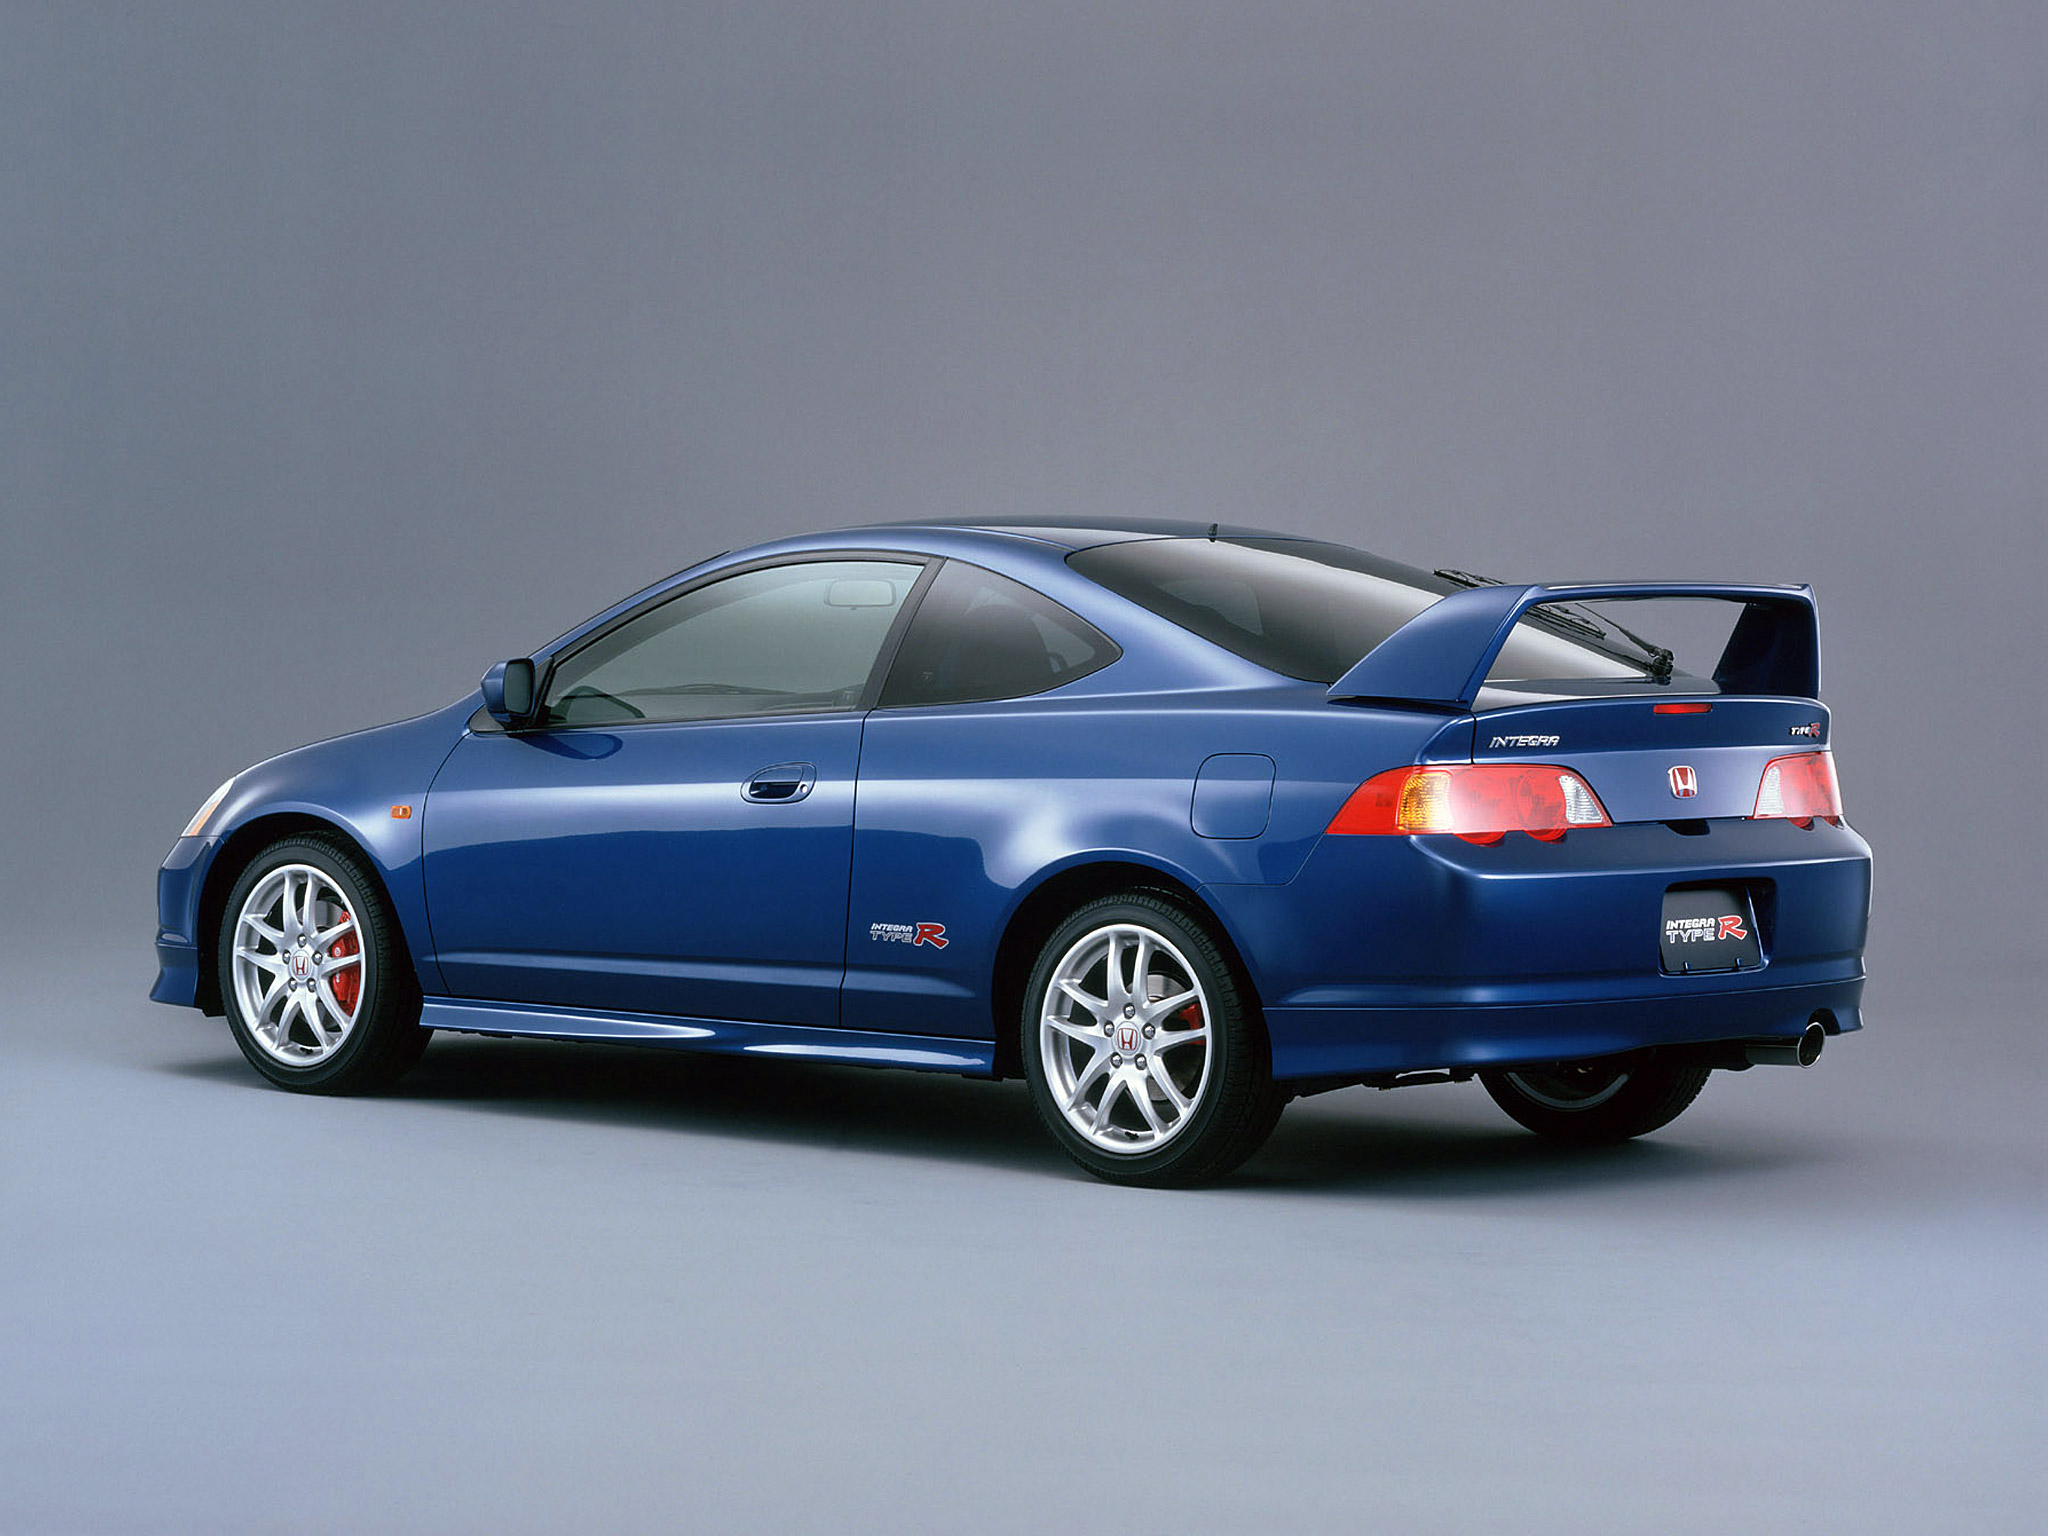  2001 Honda Integra Type R Wallpaper.